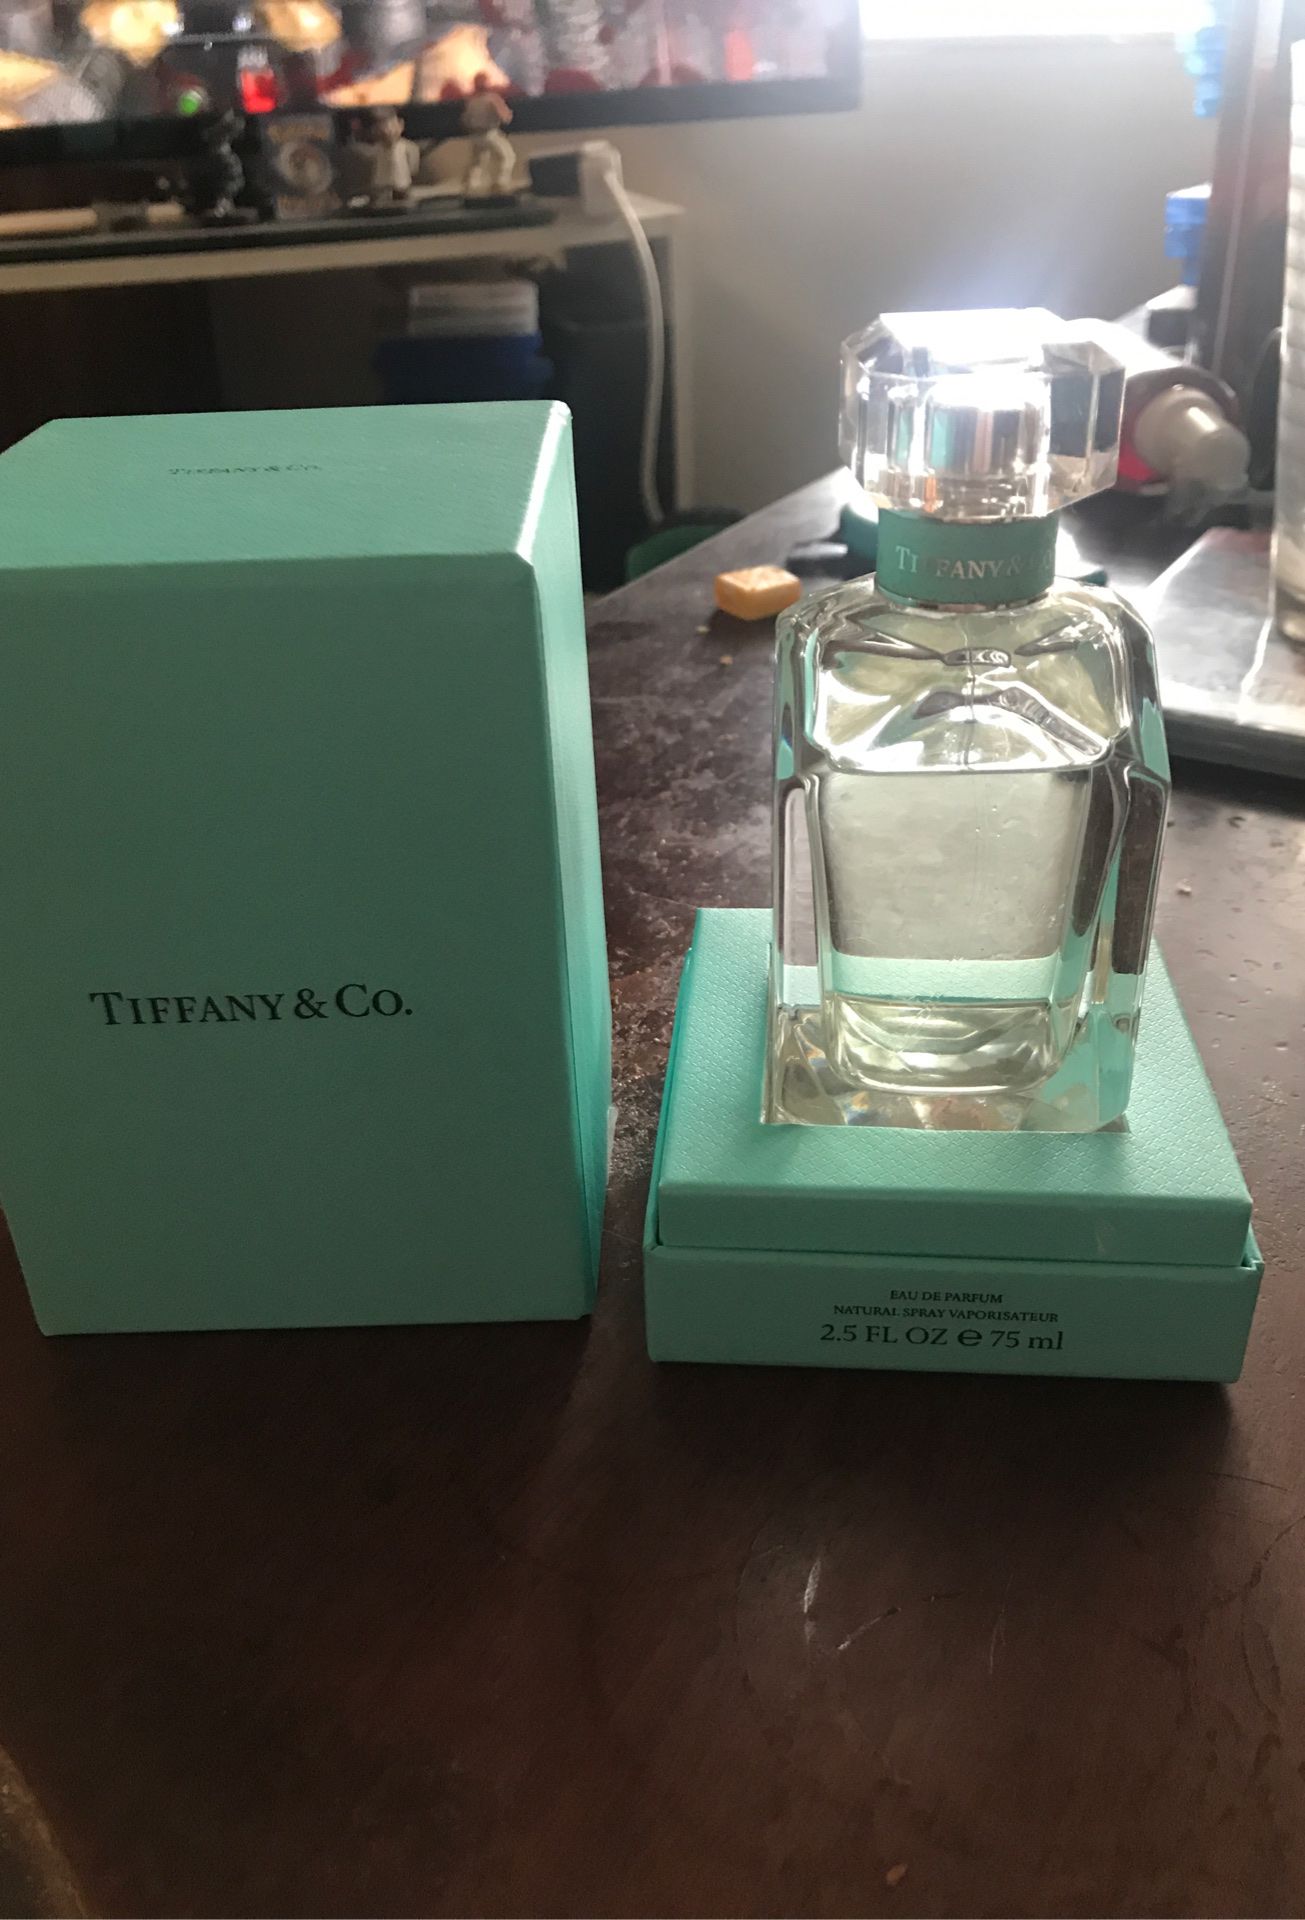 Tiffany & co. Perfum